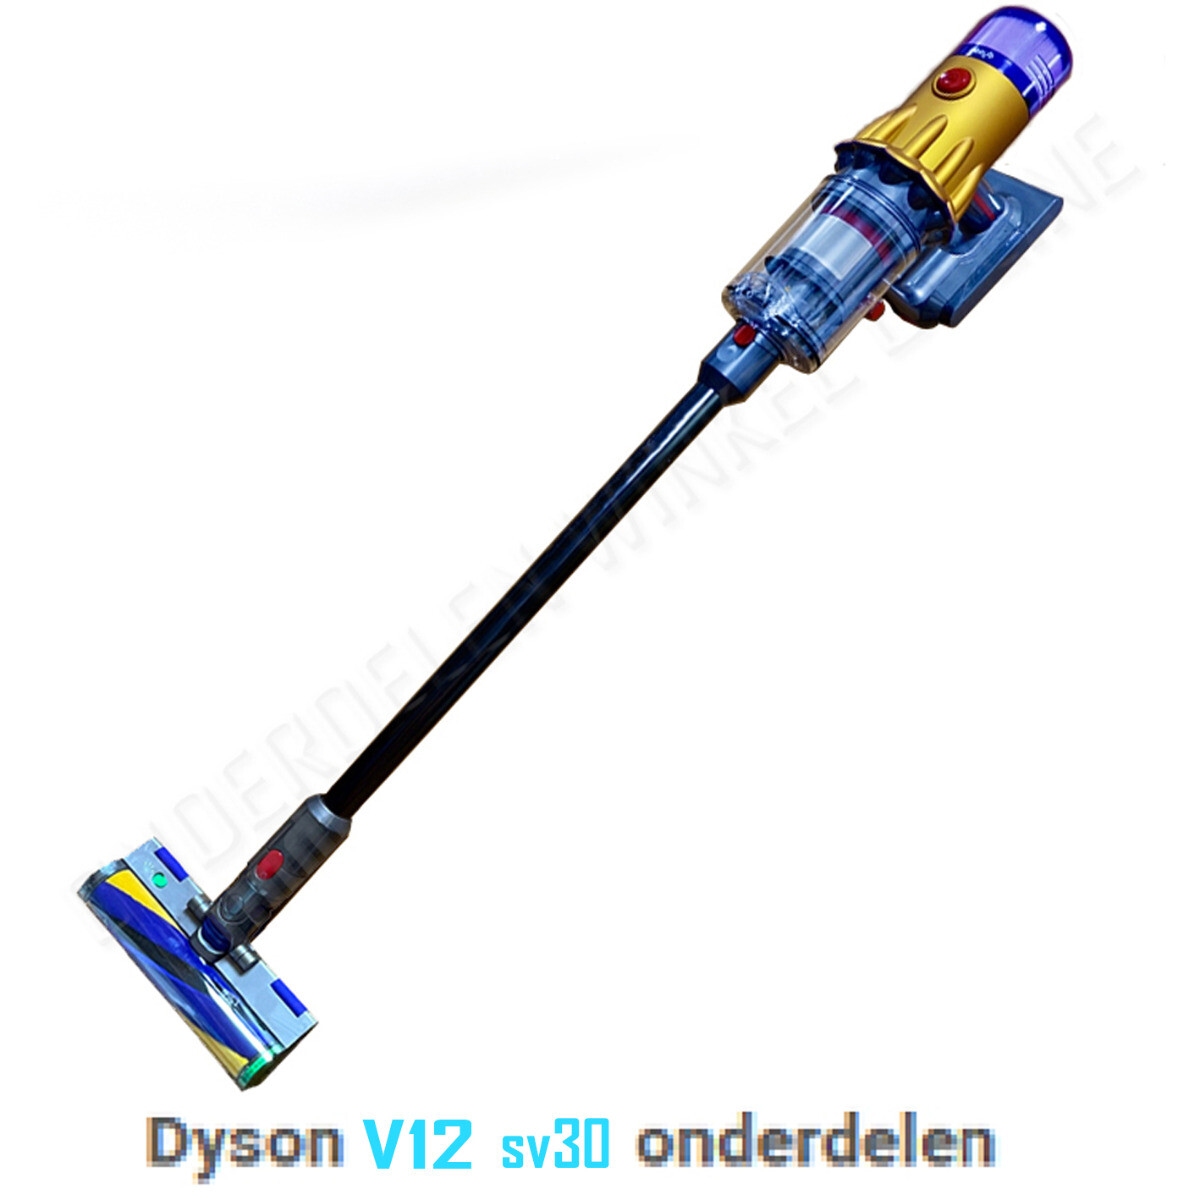 Dyson v12 sv30 onderdelen accessoires motor filter zuigmond accu batterij borstel buis oplader